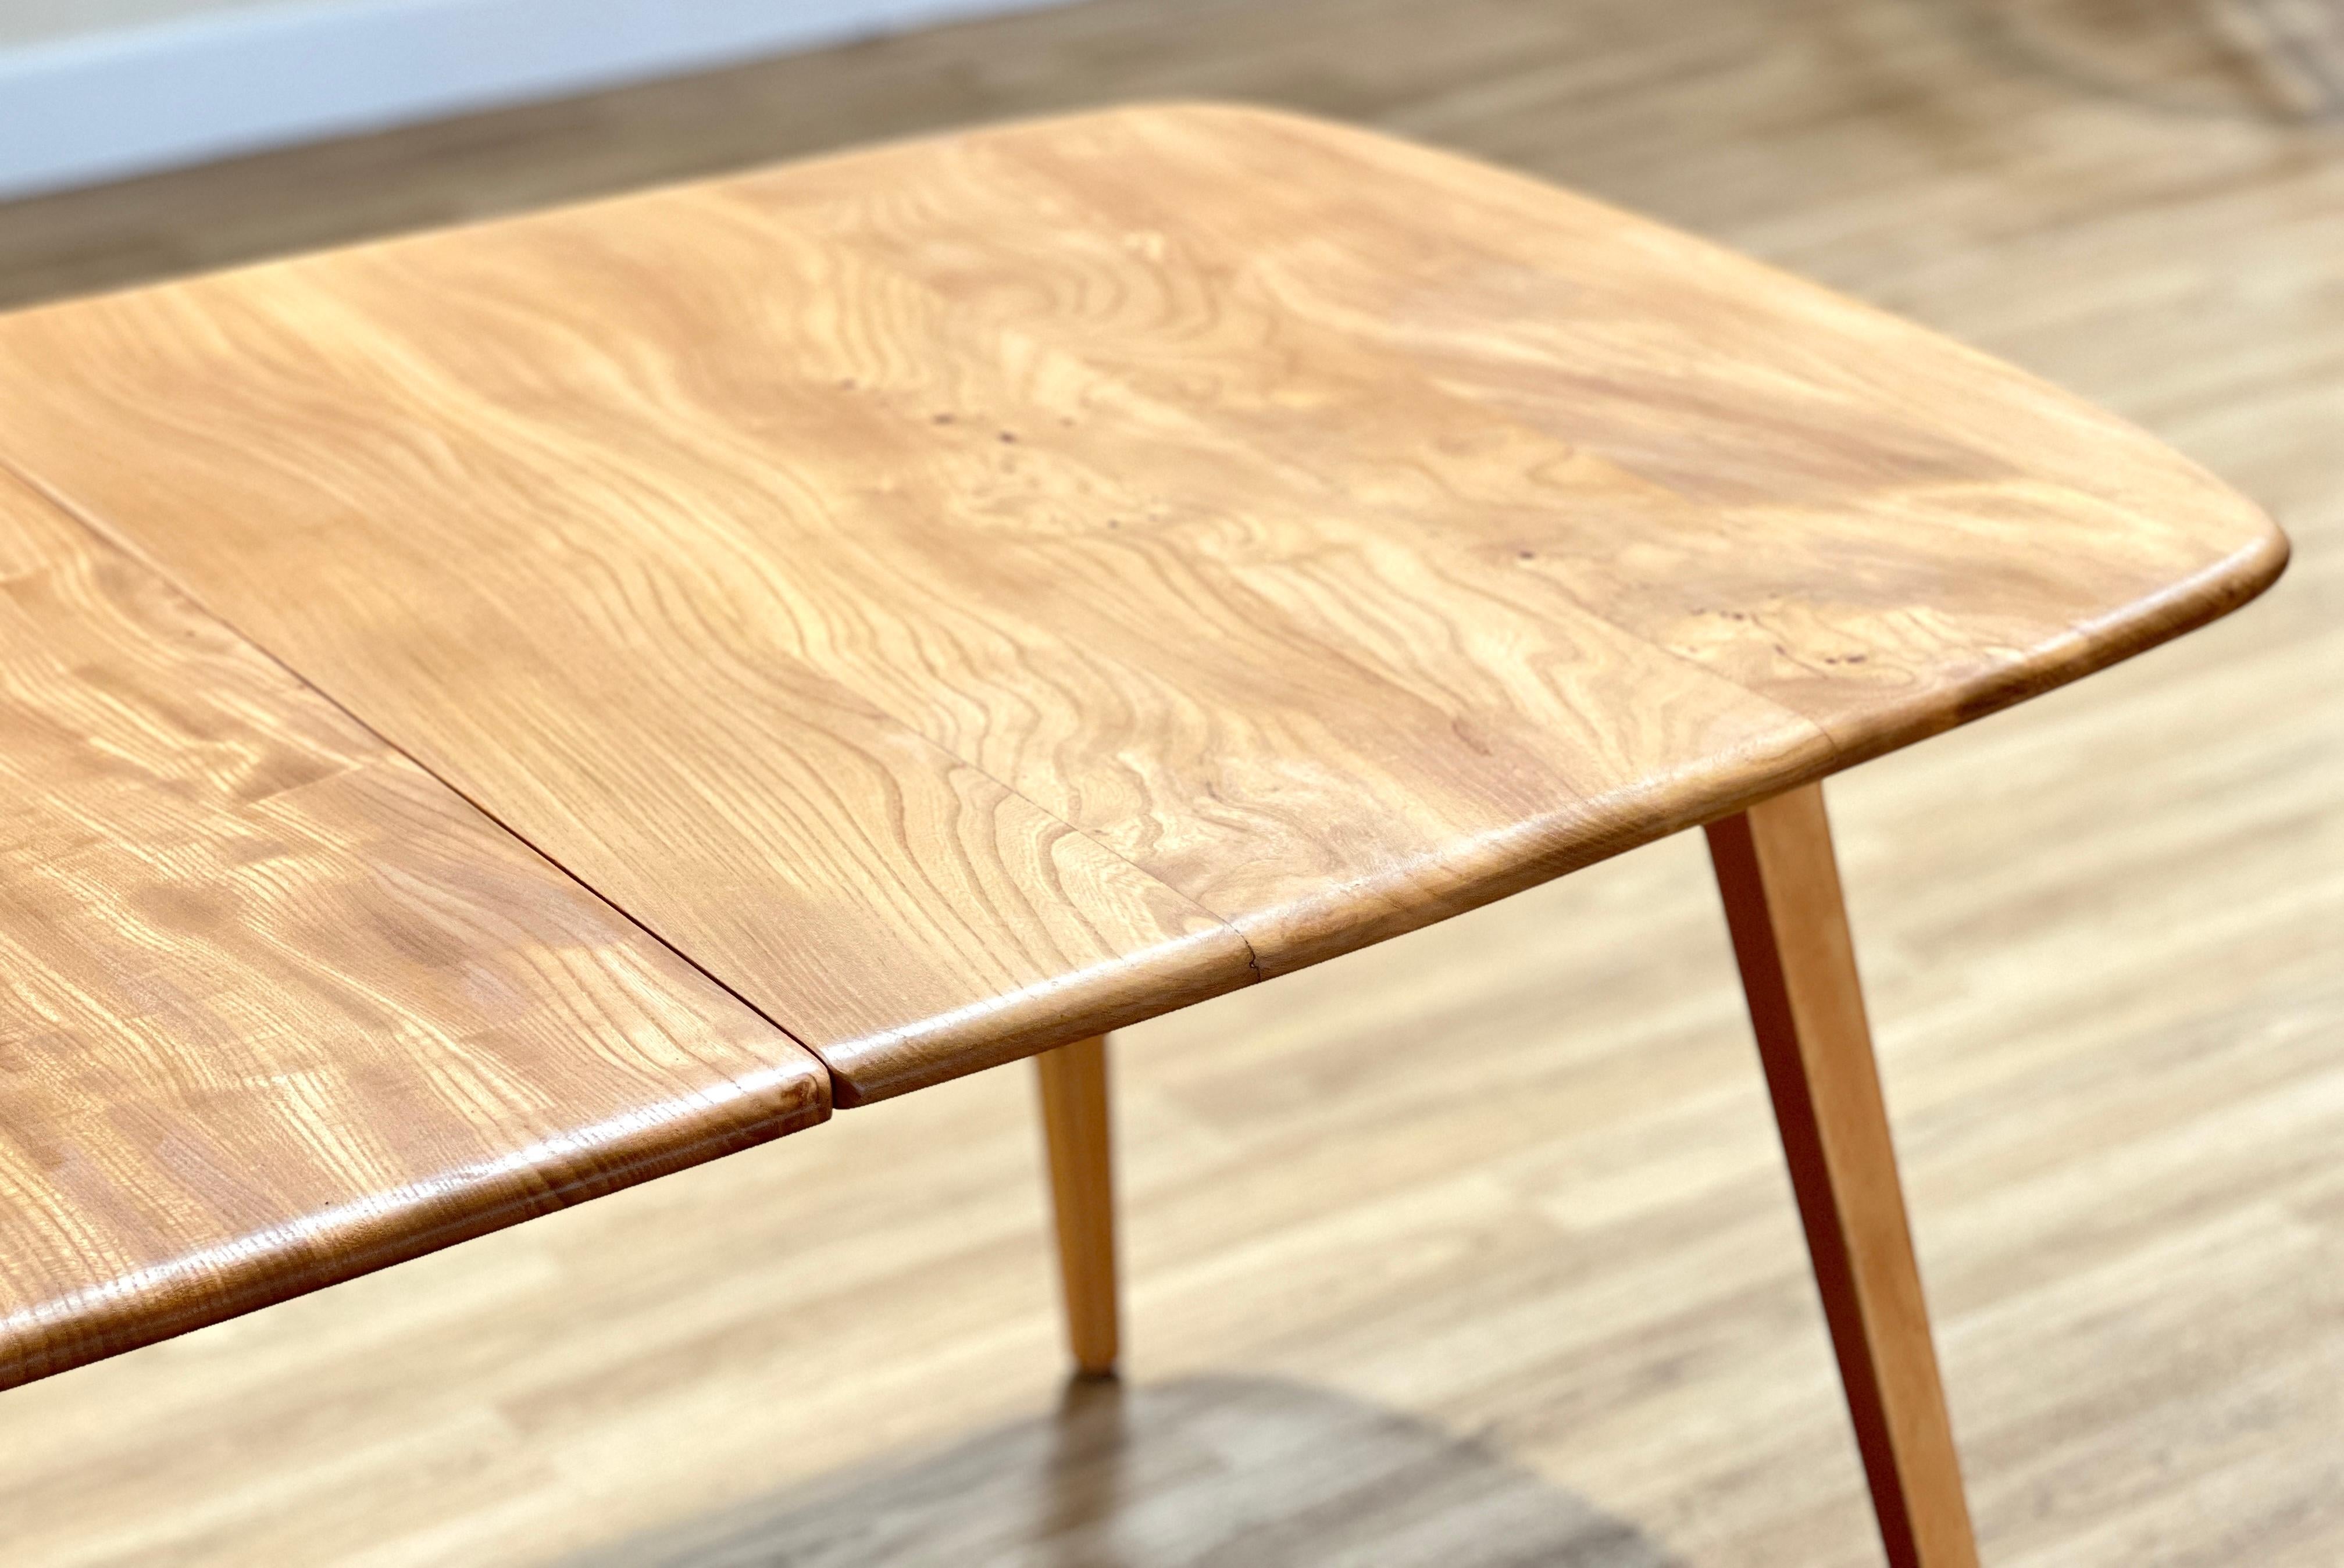 Dieser atemberaubende ausziehbare Esstisch wurde von dem britischen Möbelhersteller Ercol in Handarbeit gefertigt und von Lucian Ercoloni entworfen.

Der ausziehbare Esstisch aus der Mitte des Jahrhunderts ist ein elegantes und funktionelles